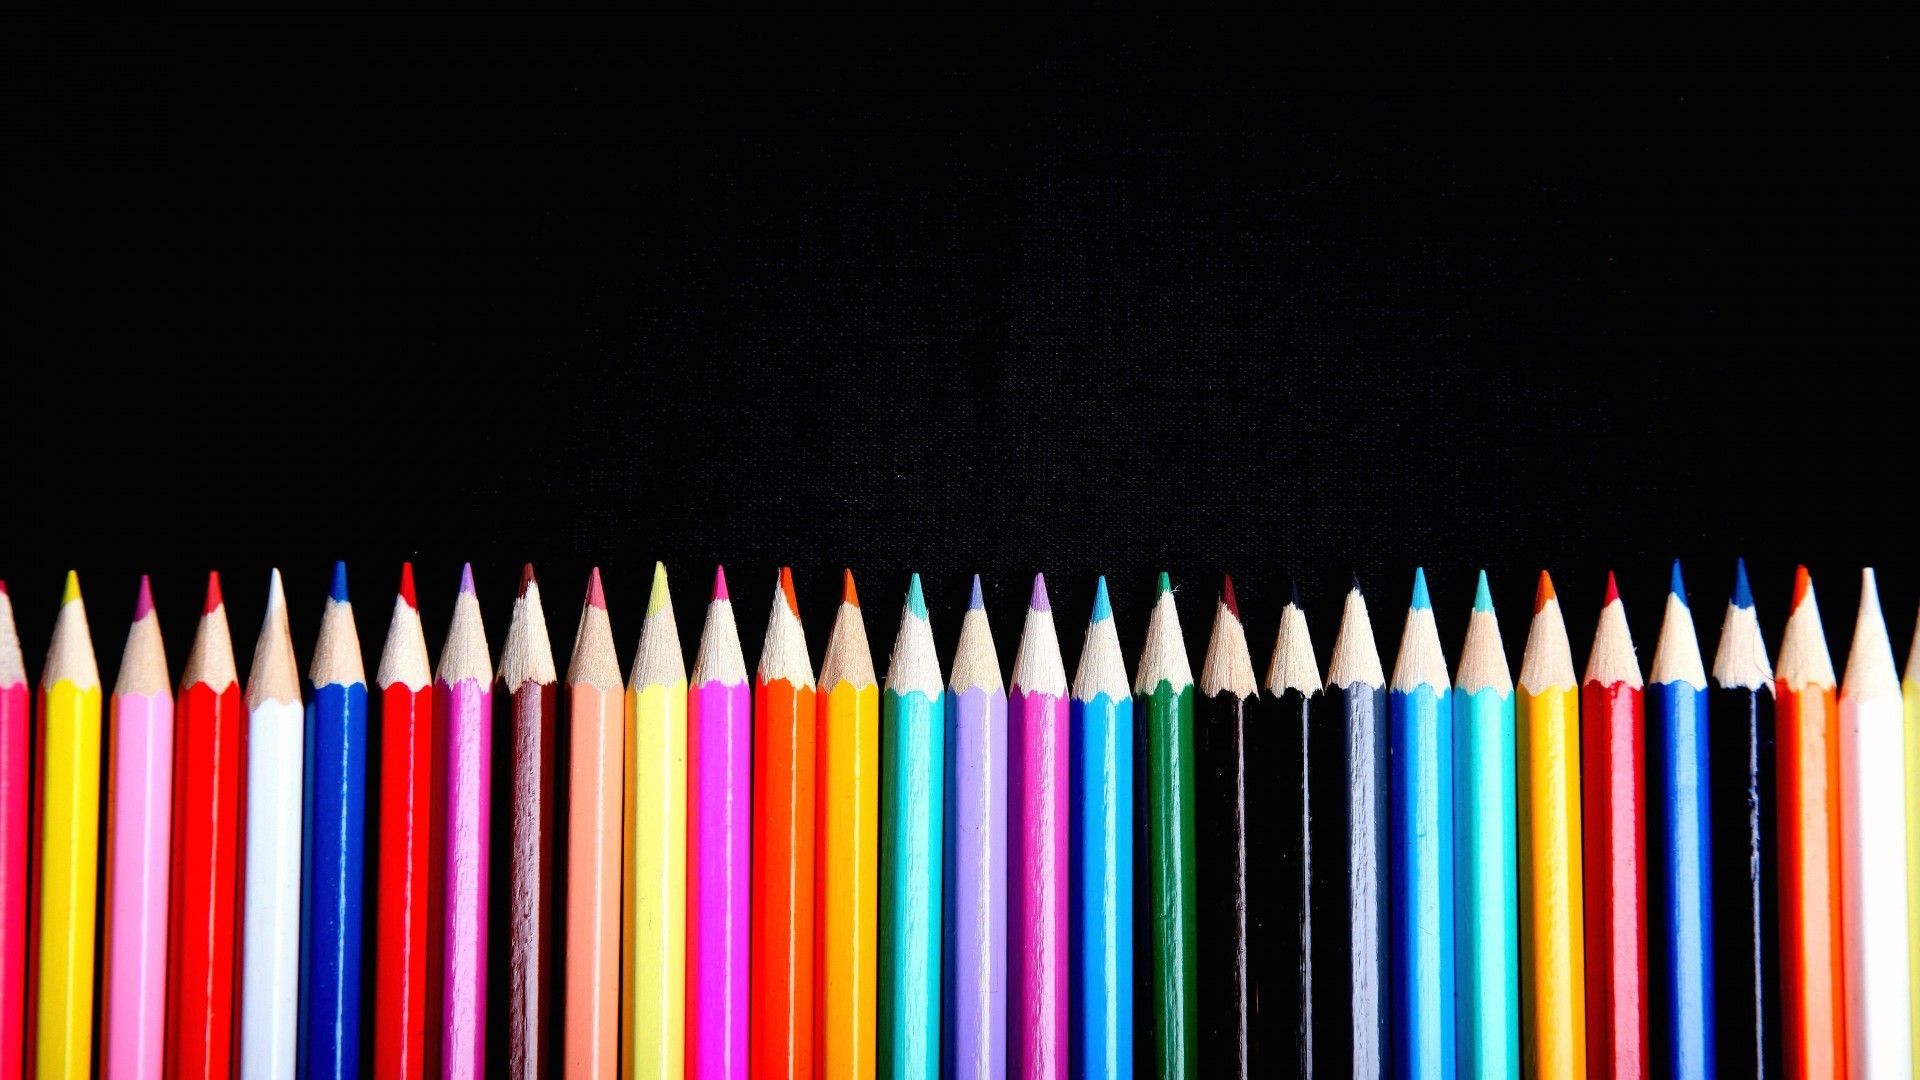 Colored pencils HD wallpaper .com